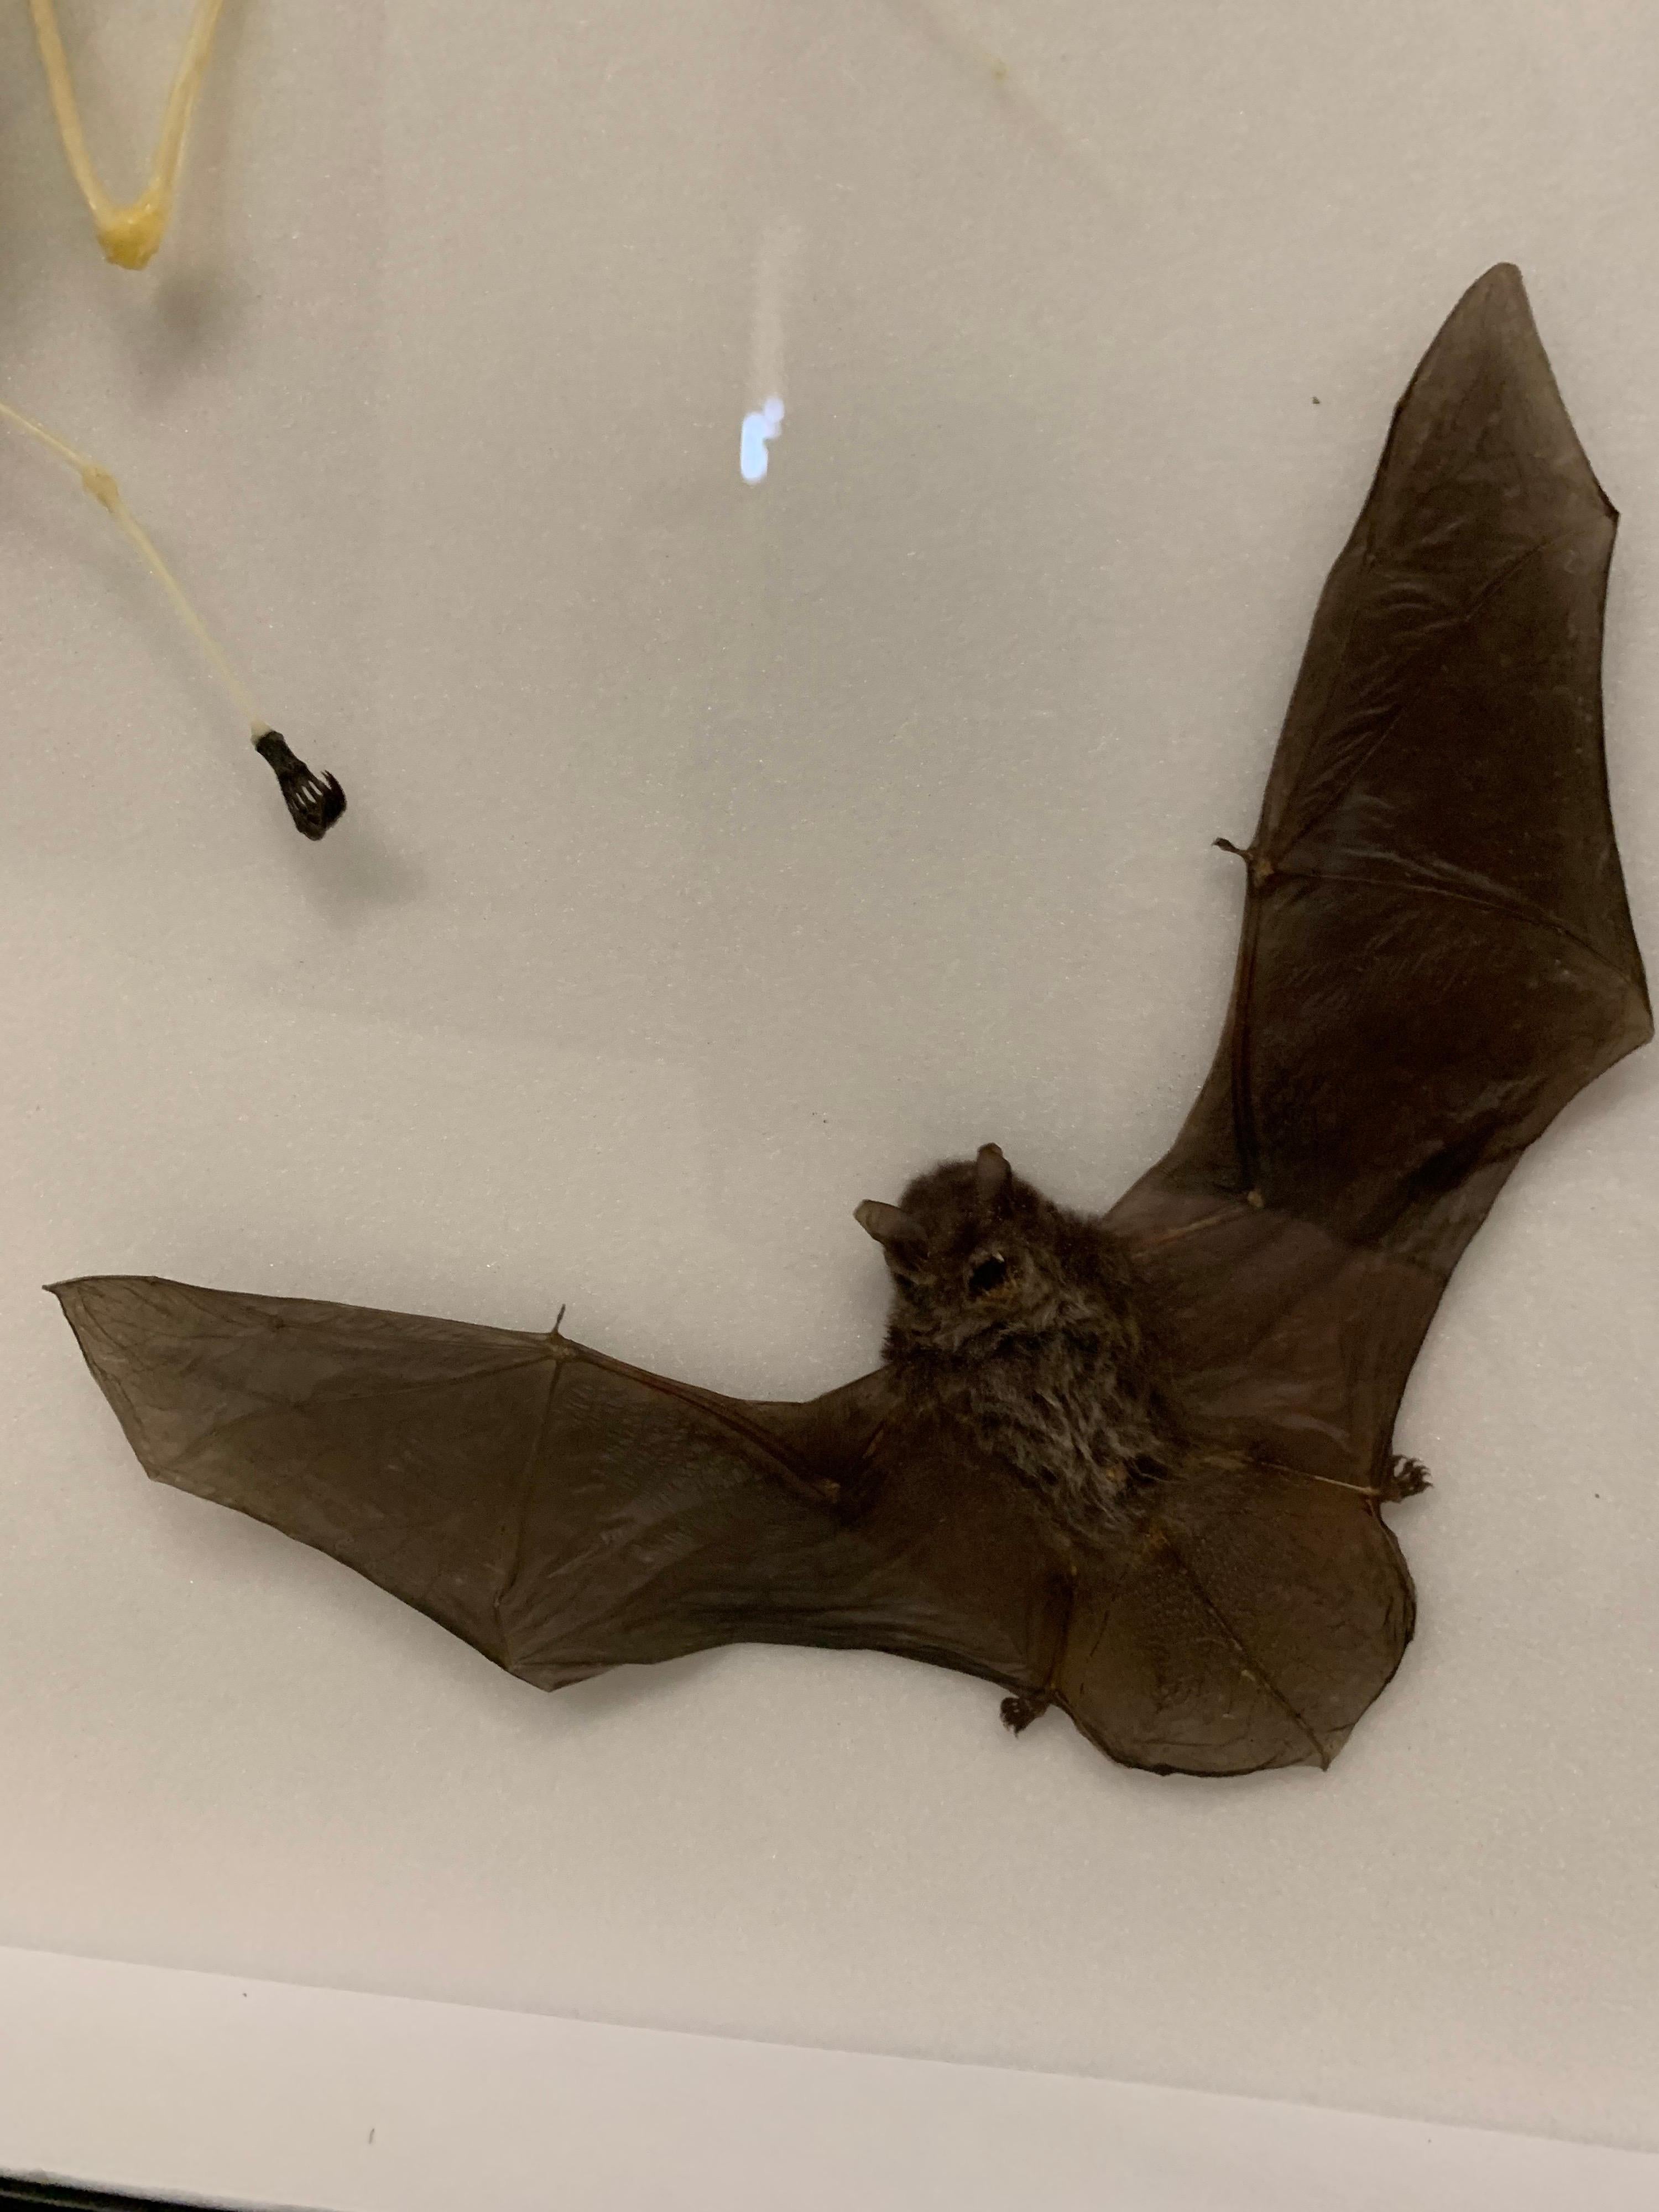 Other Taxidermy Display Bat Species, Wood, Glass